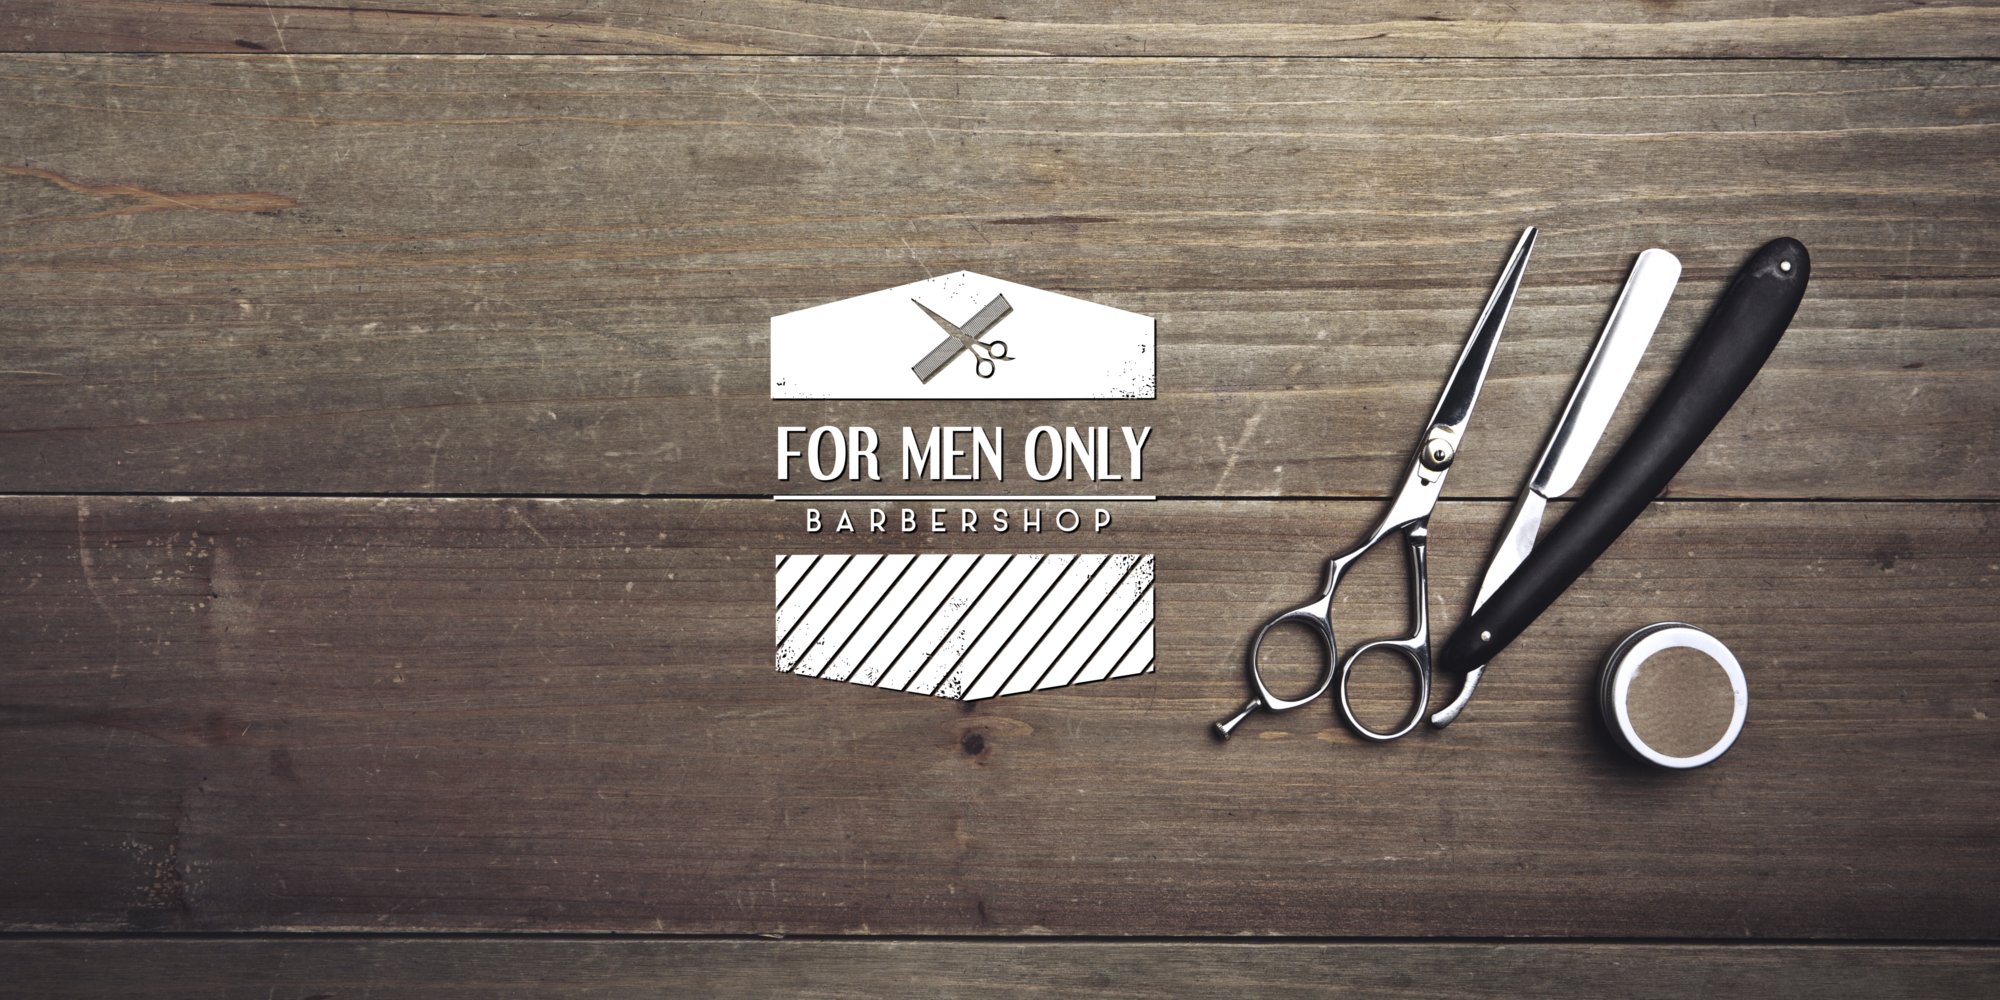 For Men Only - Barbershop